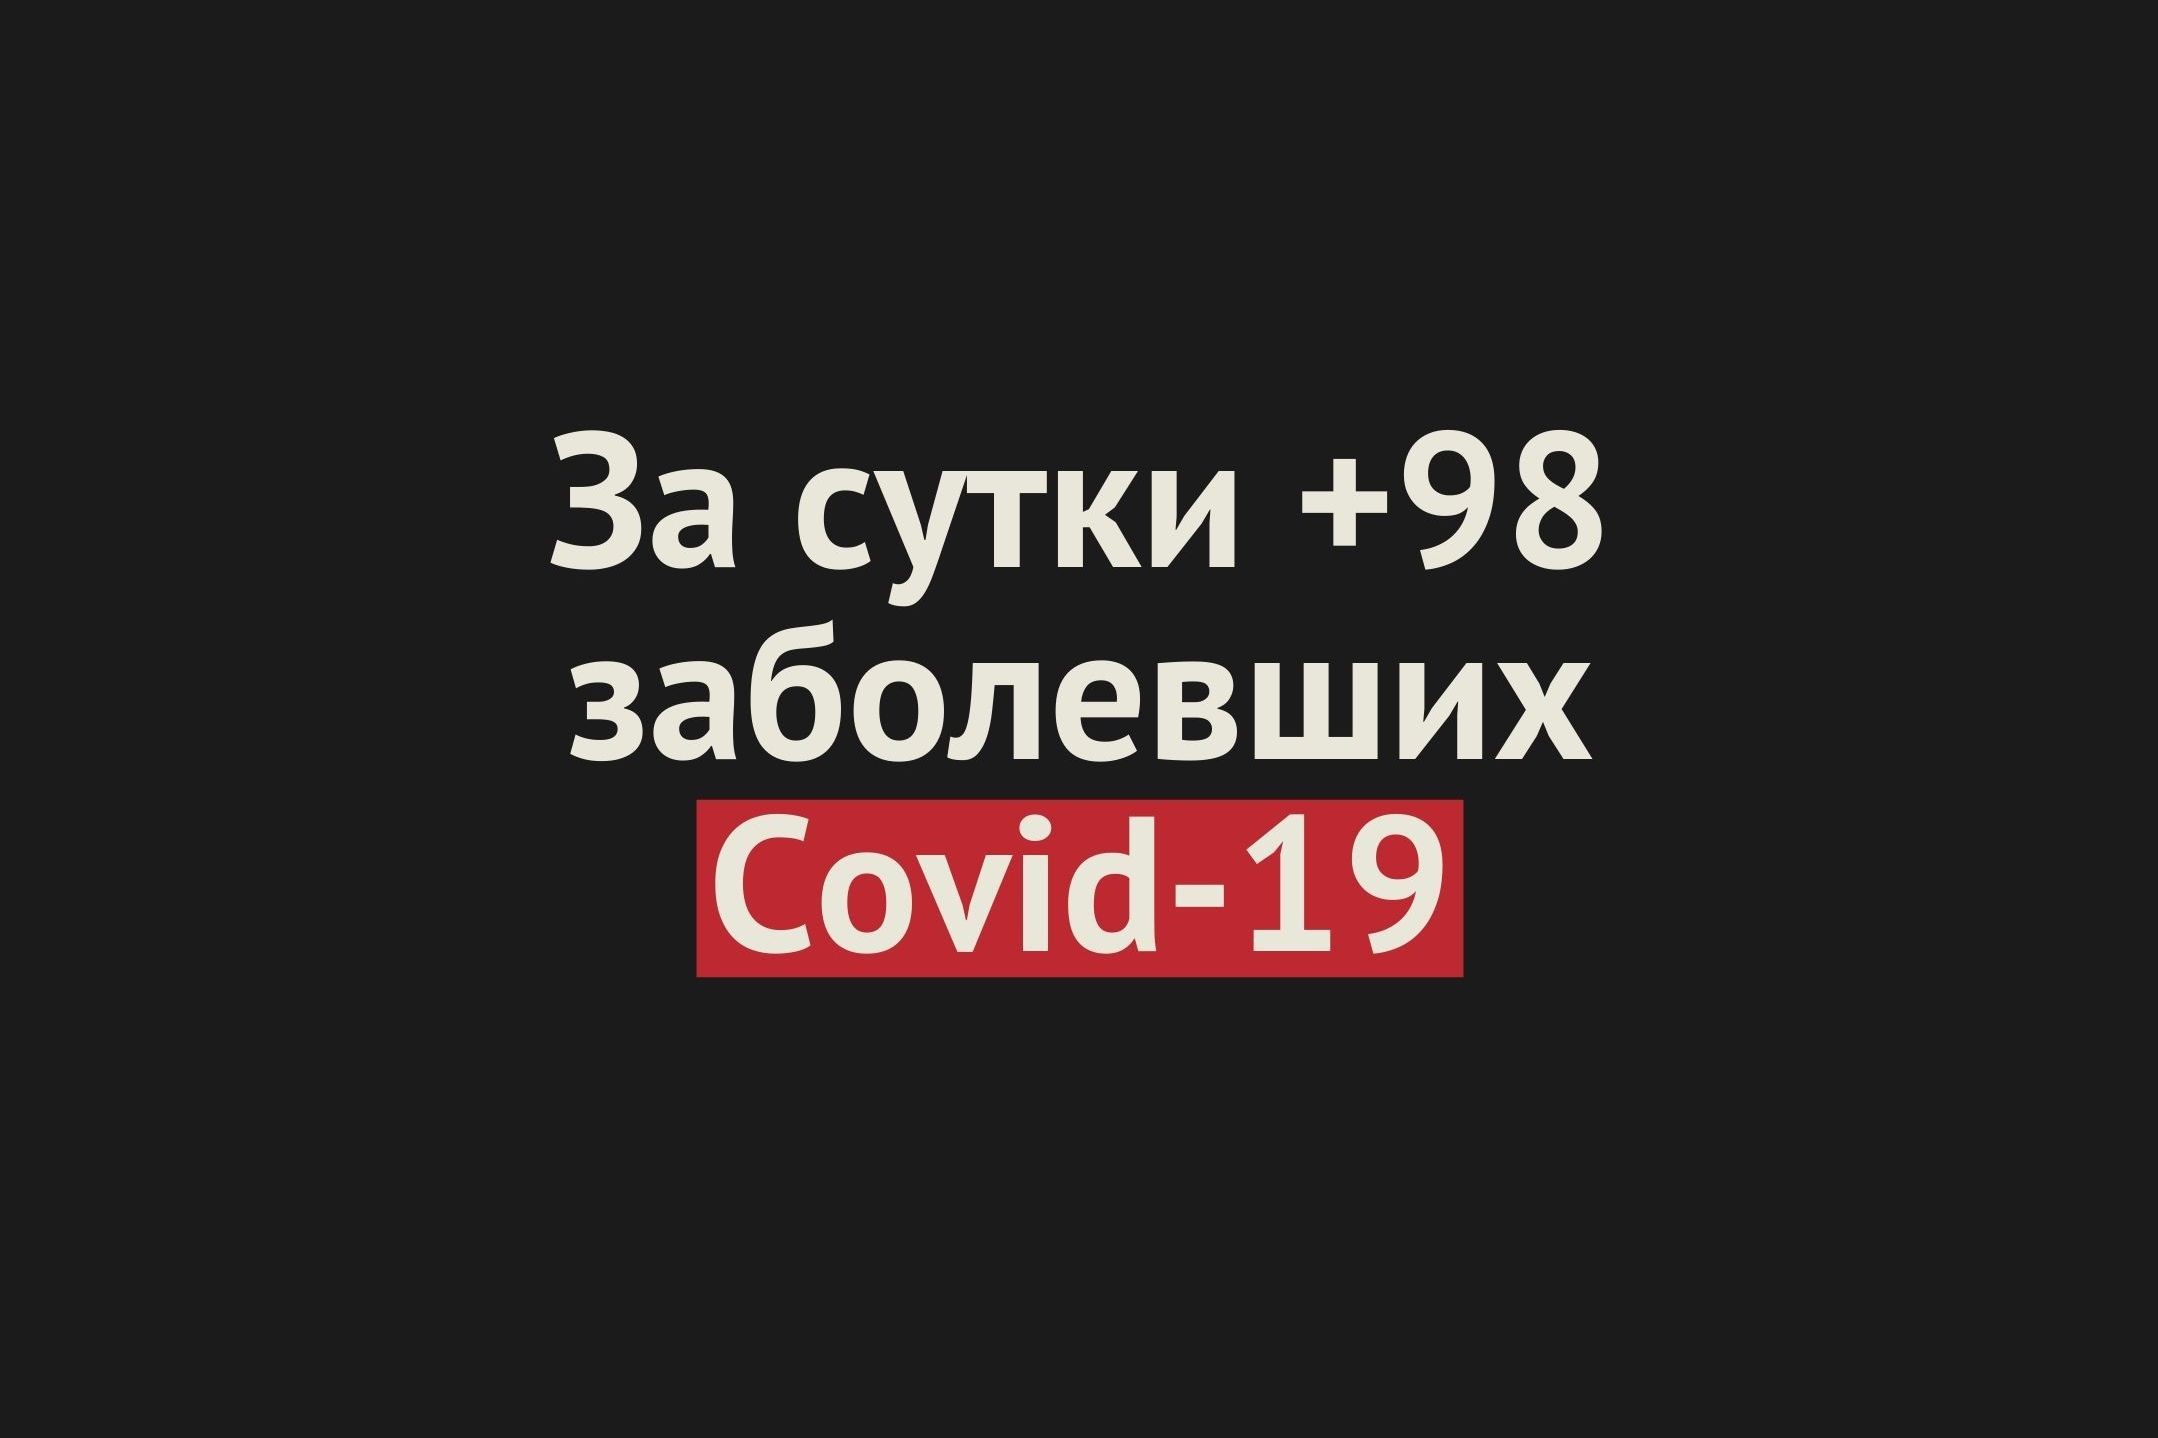 https://www.ural56.ru/upload/iblock/ac7/ac755d8985d66cc54737341ea716c7a7.jpg